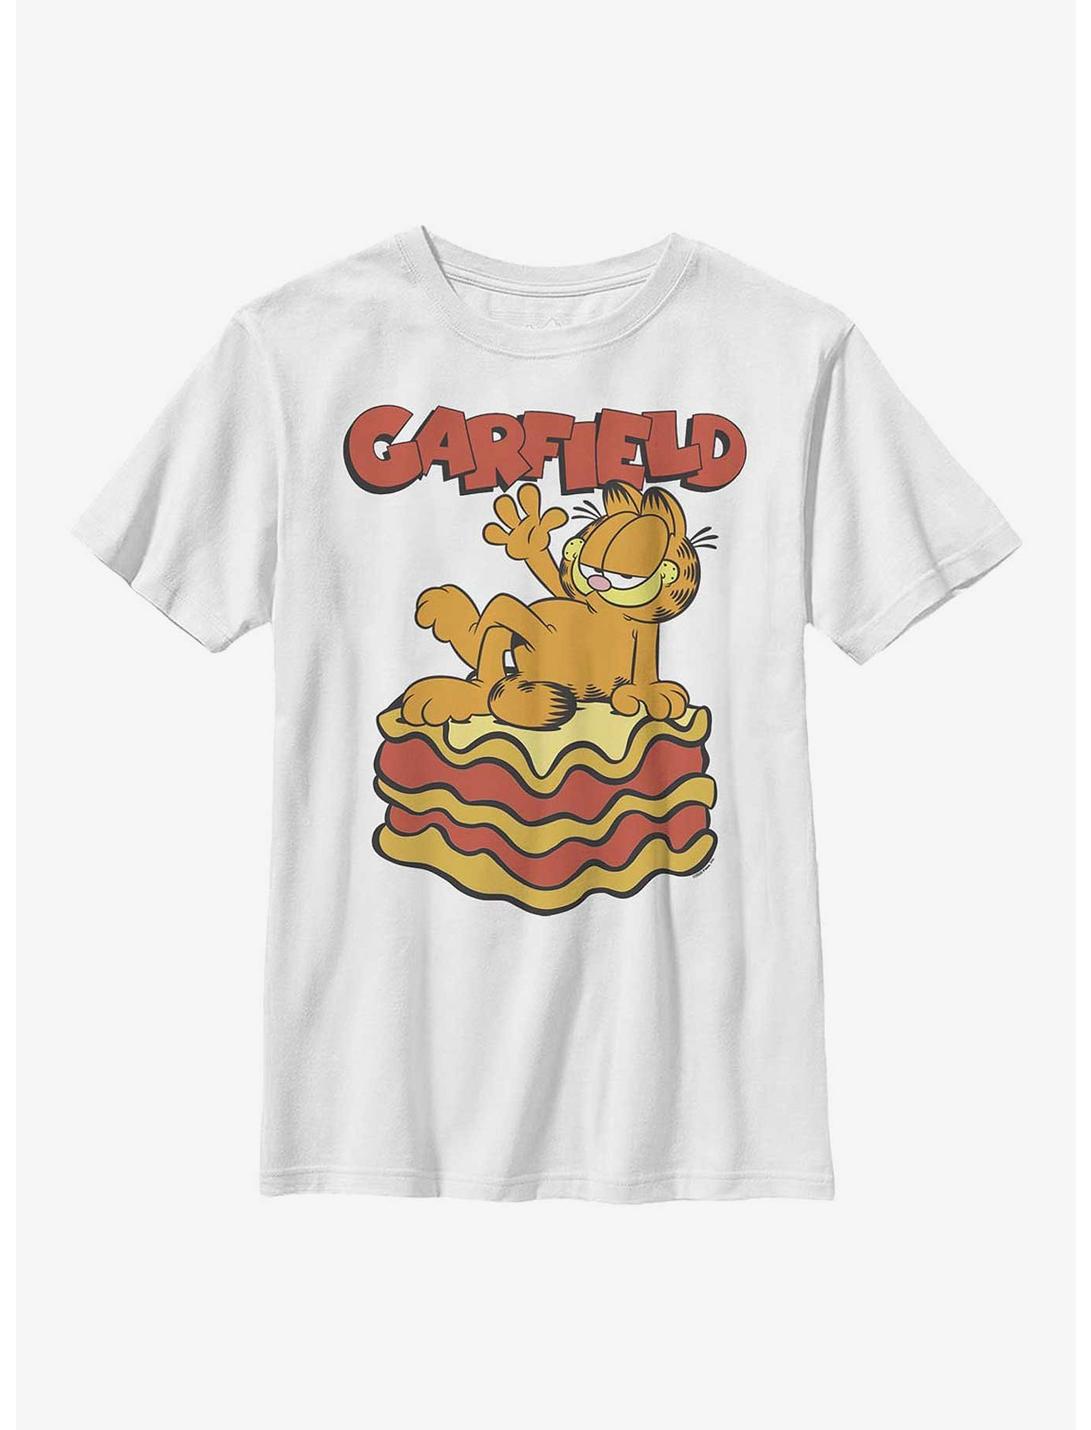 Garfield King Of Lasagna Youth T-Shirt, WHITE, hi-res